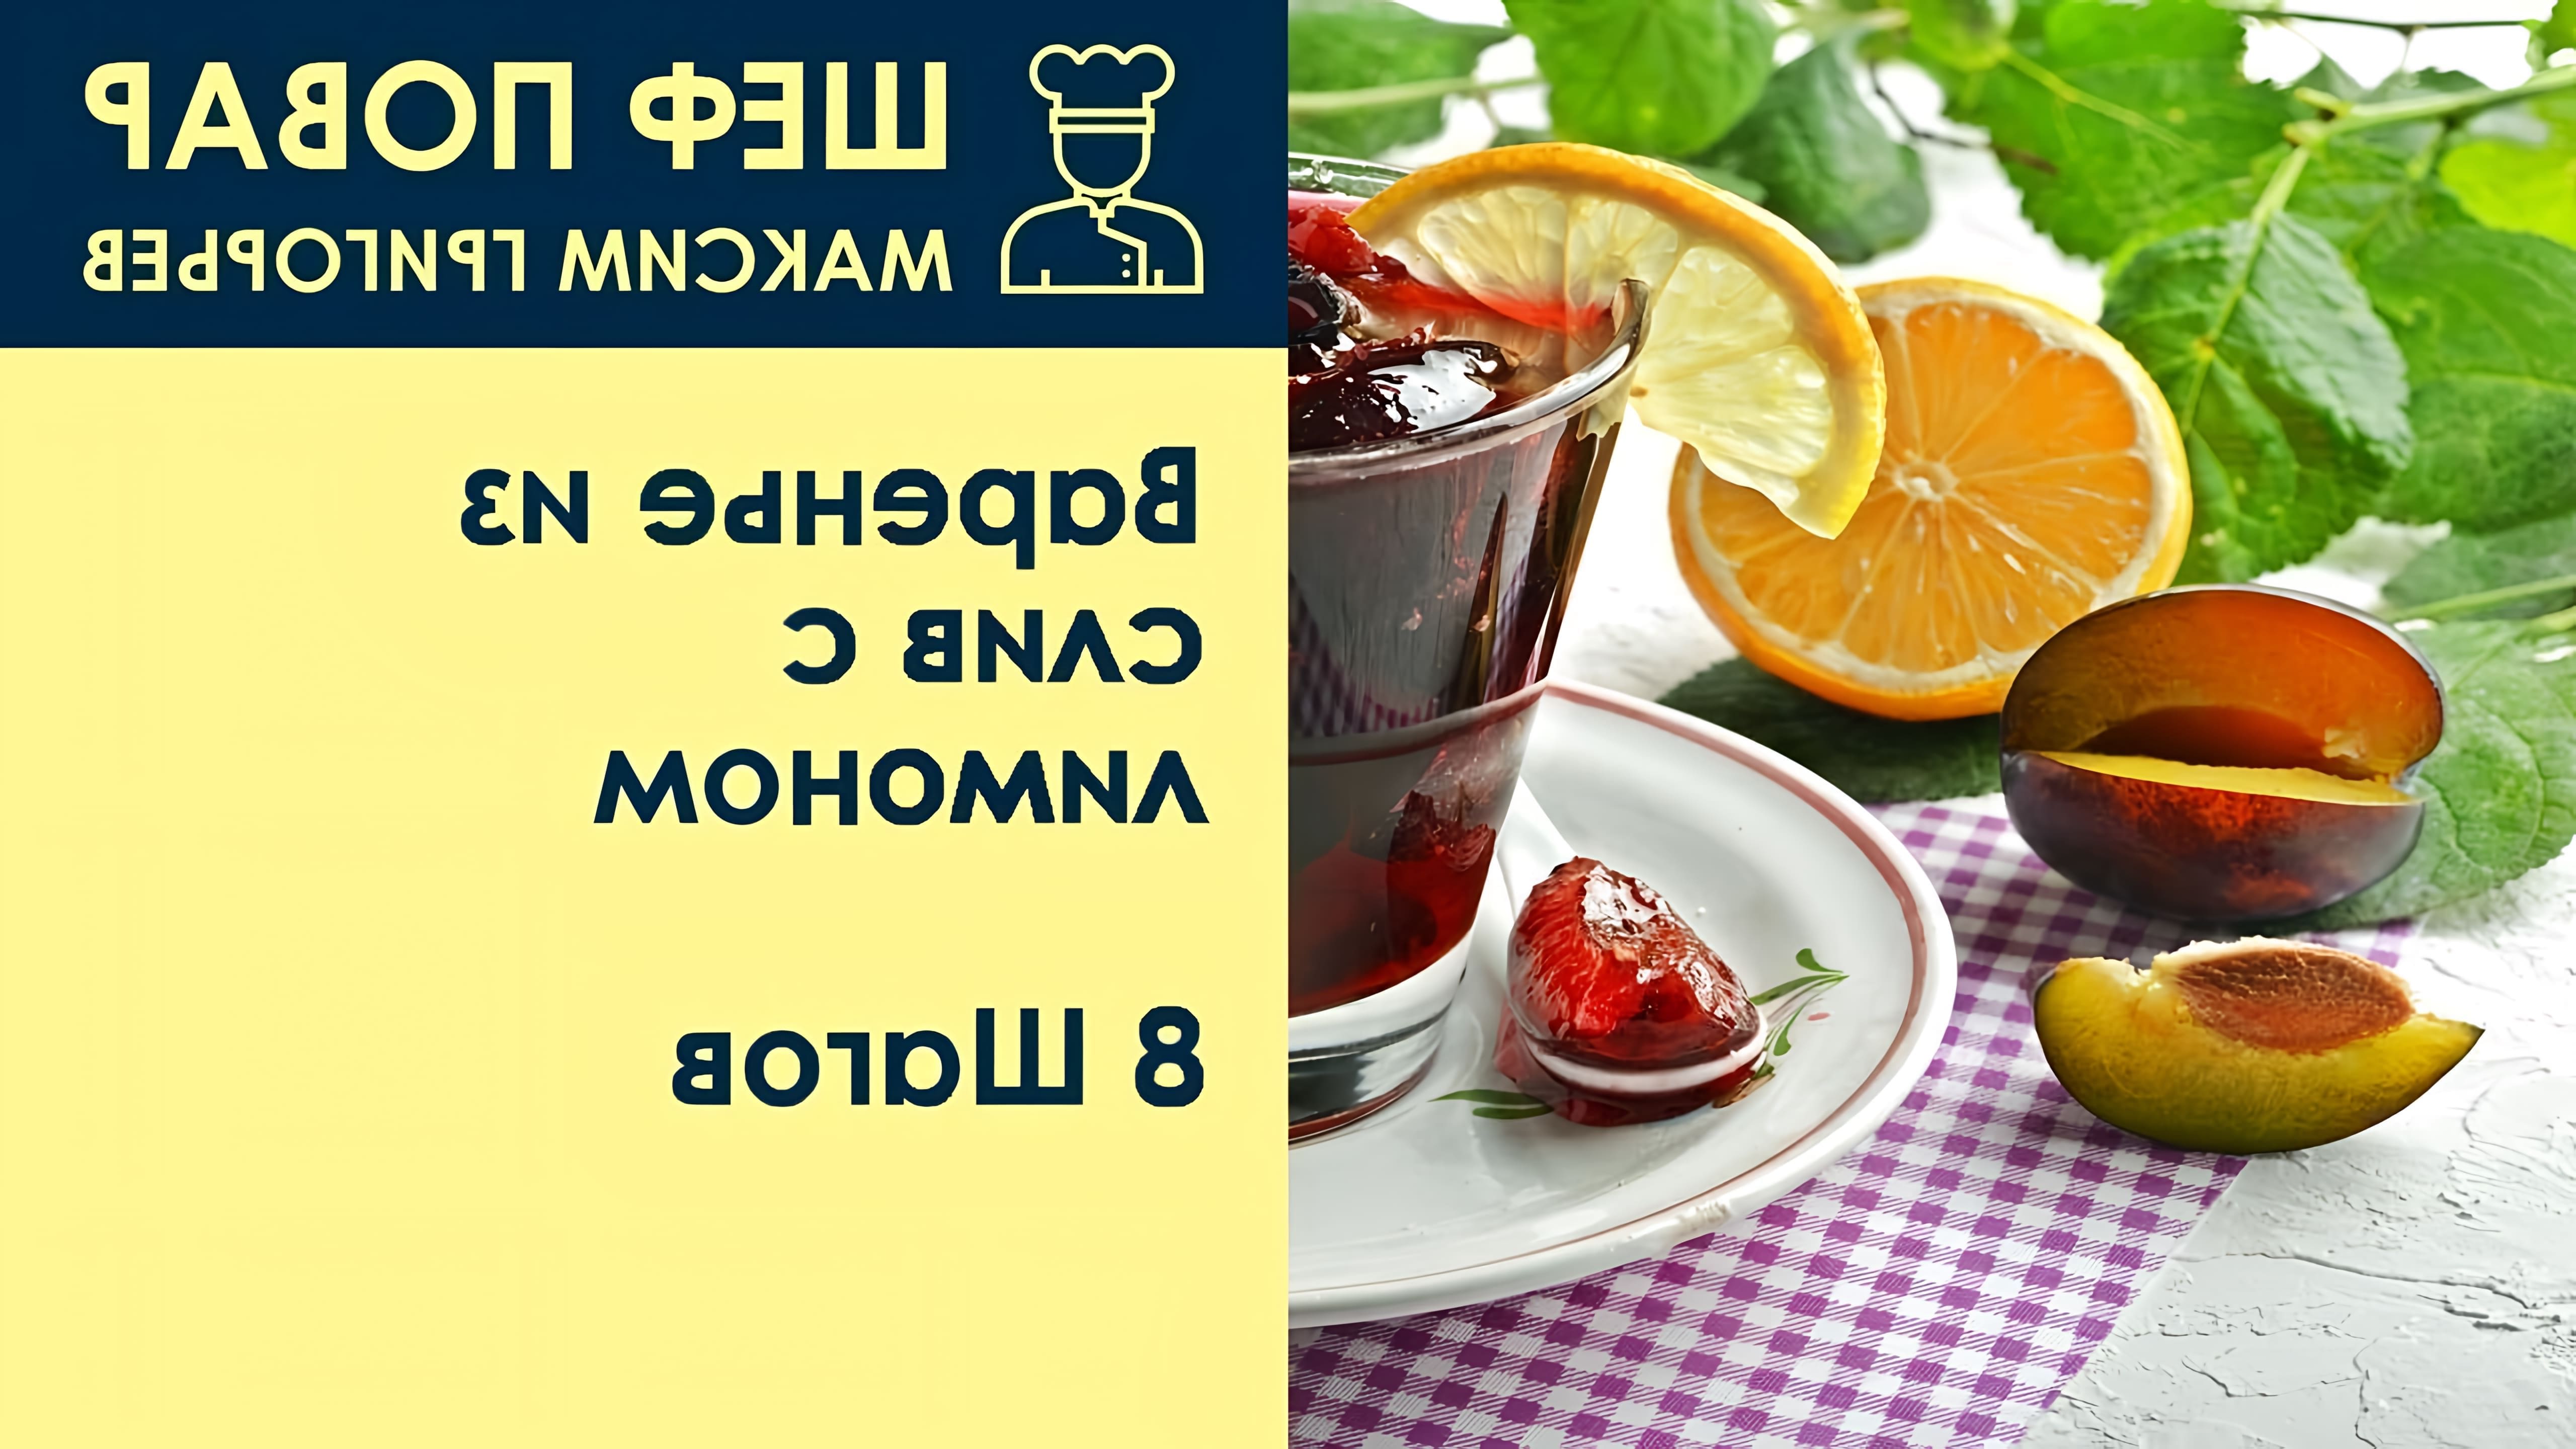 В этом видео шеф-повар Максим Григорьев показывает, как приготовить варенье из слив с лимоном